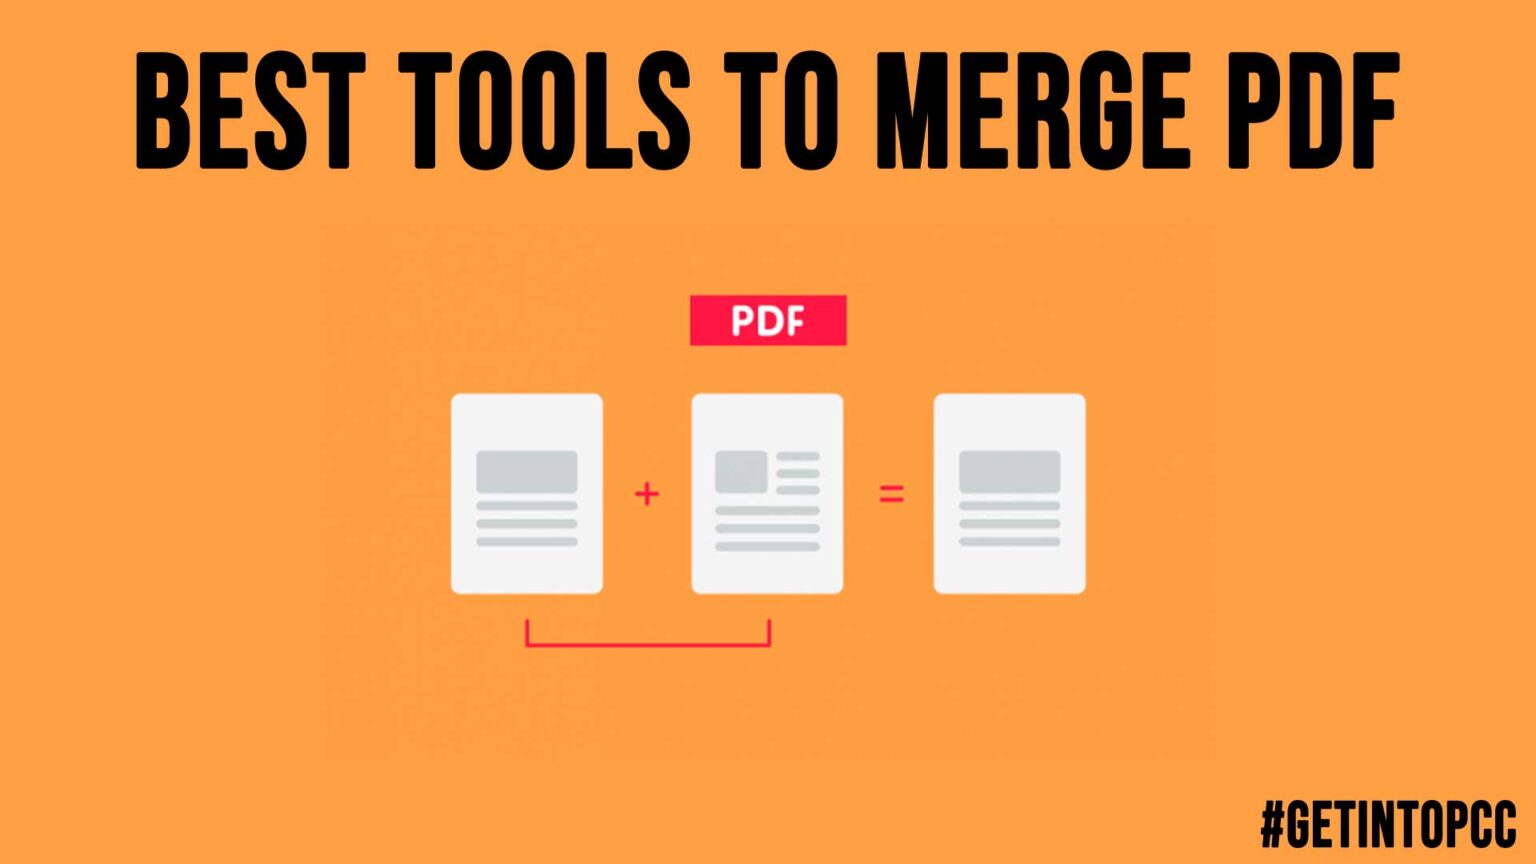 pdf merger free tool